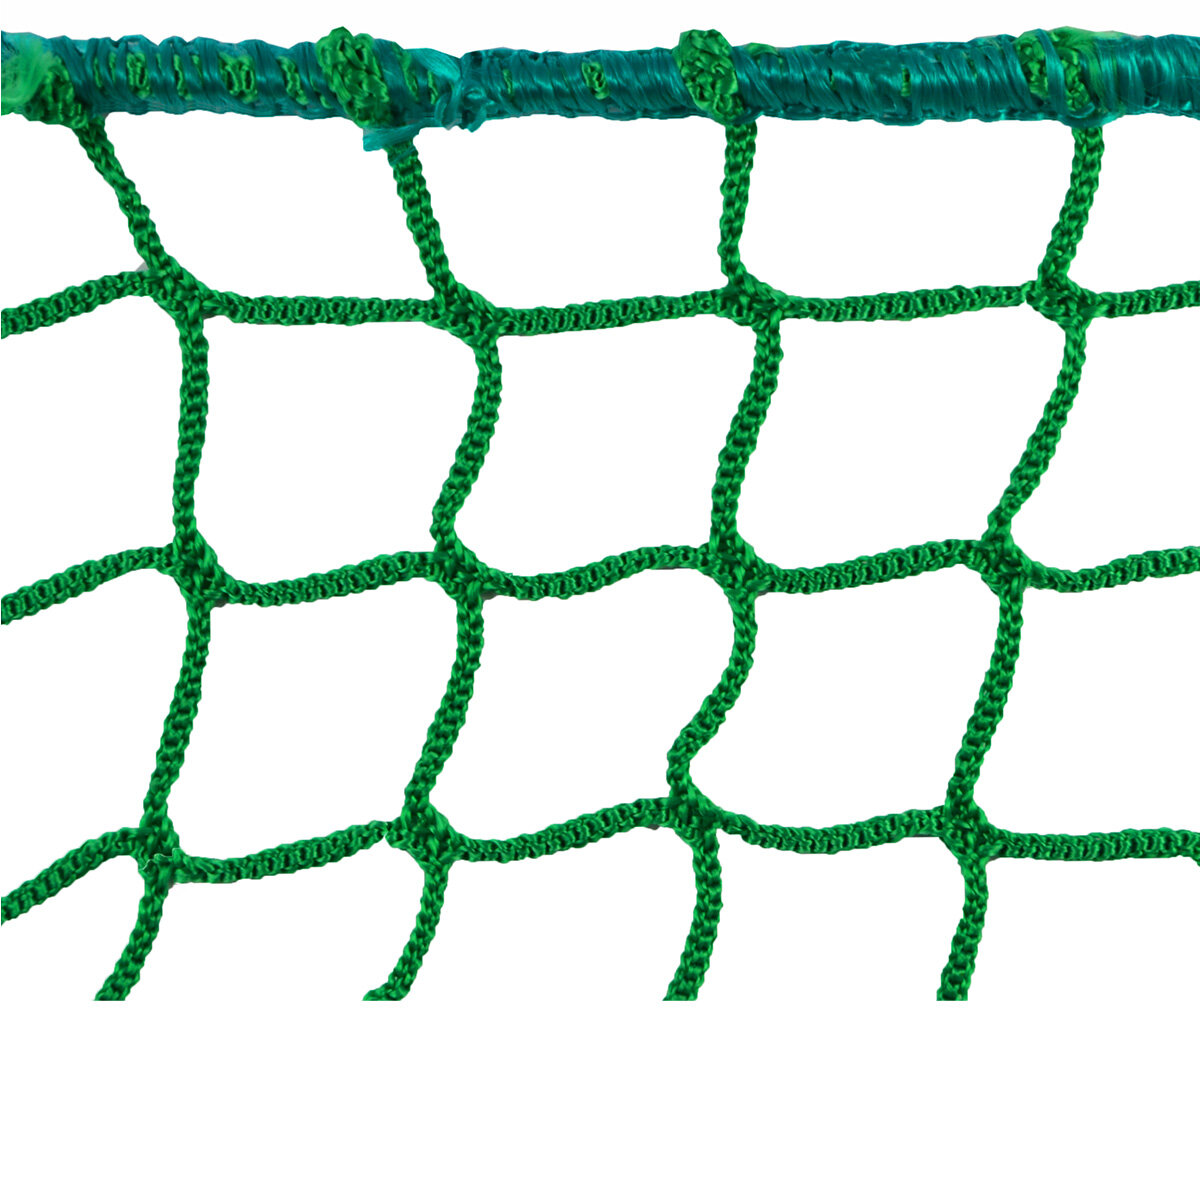 Netz für Ladungssicherung 3,5x2,5m, inkl. 20 montierten Netzhaken 